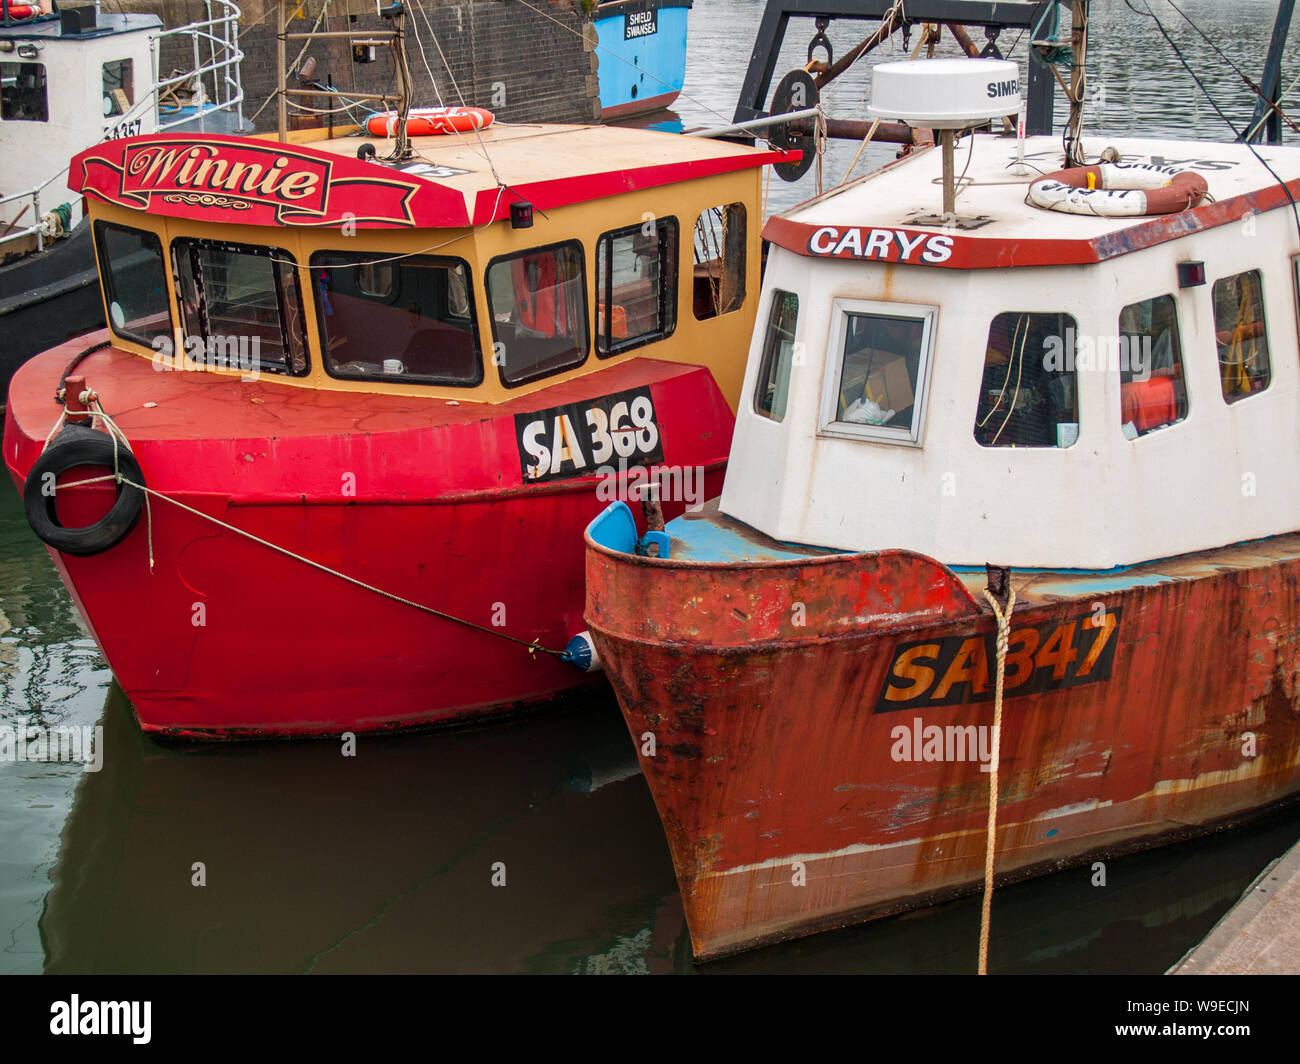 Port de plaisance de Swansea. Les bateaux de pêche amarrés au quai. Pays de Galles, Royaume-Uni Banque D'Images